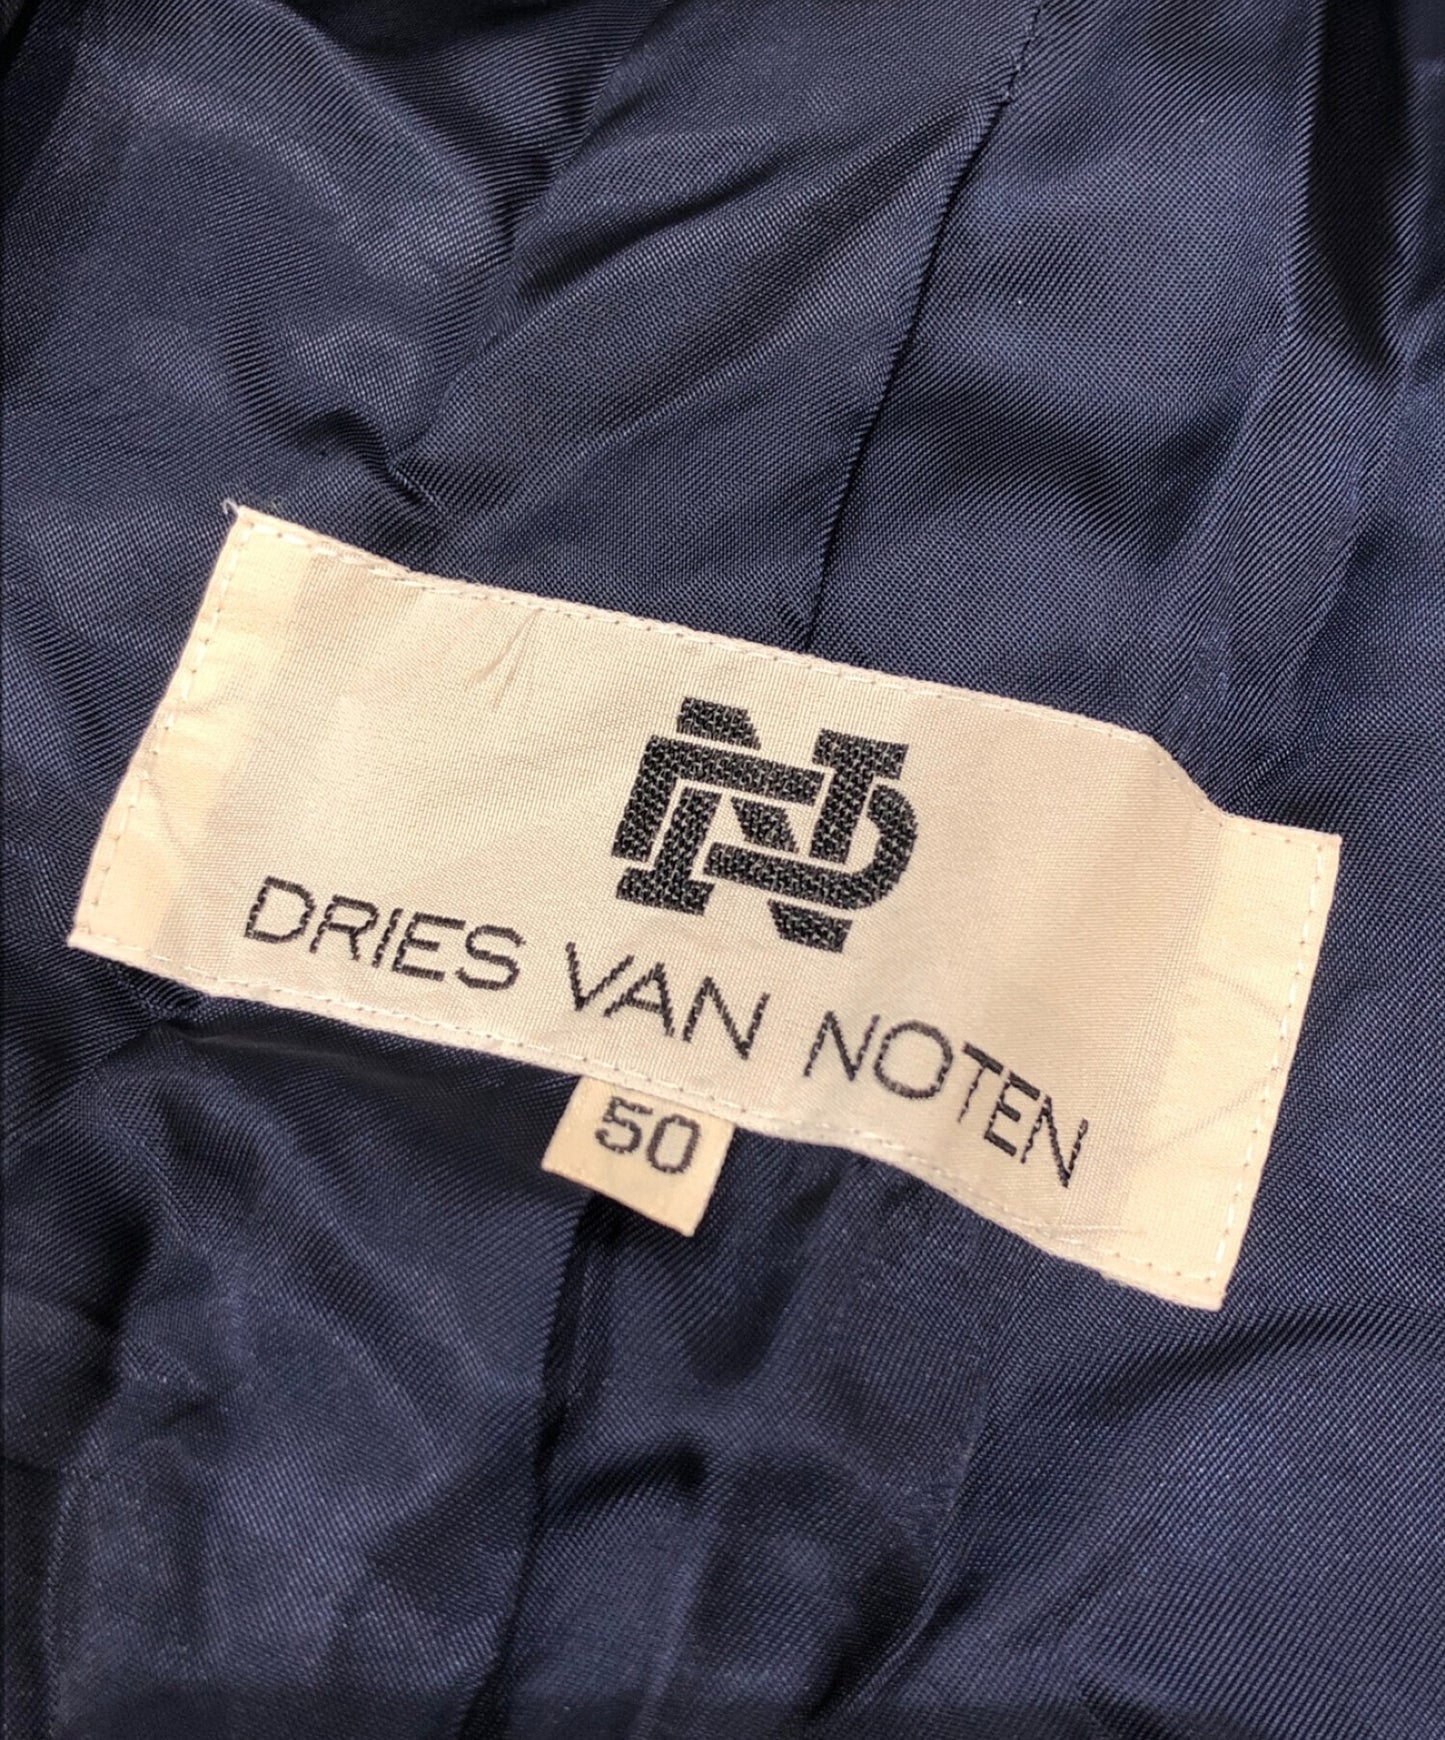 Dries Van Noten [Old]尼龍模具領子套件C-TK1003